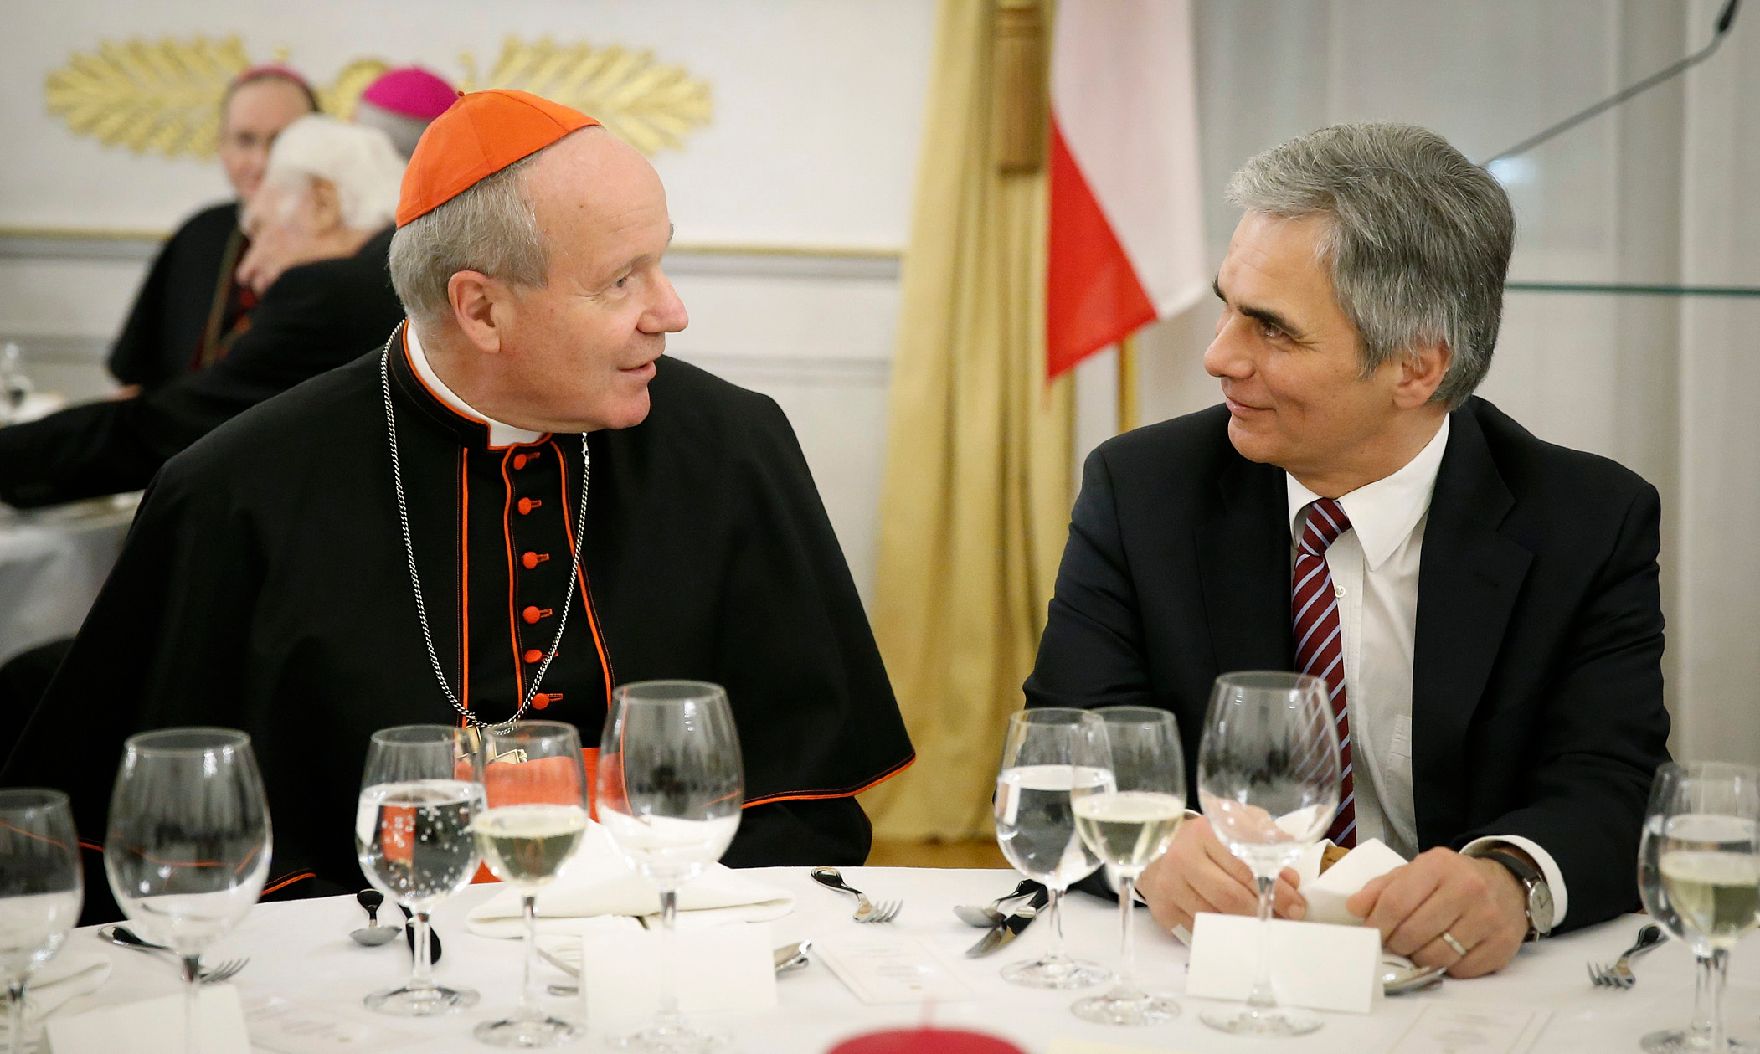 Am 11. Dezember 2012 lud der Bundeskanzler religiöse Vertreter zu einem Adventempfang in das Bundeskanzleramt. Im Bild Bundeskanzler Werner Faymann (r.) mit Kardinal Christoph Schönborn (l.).